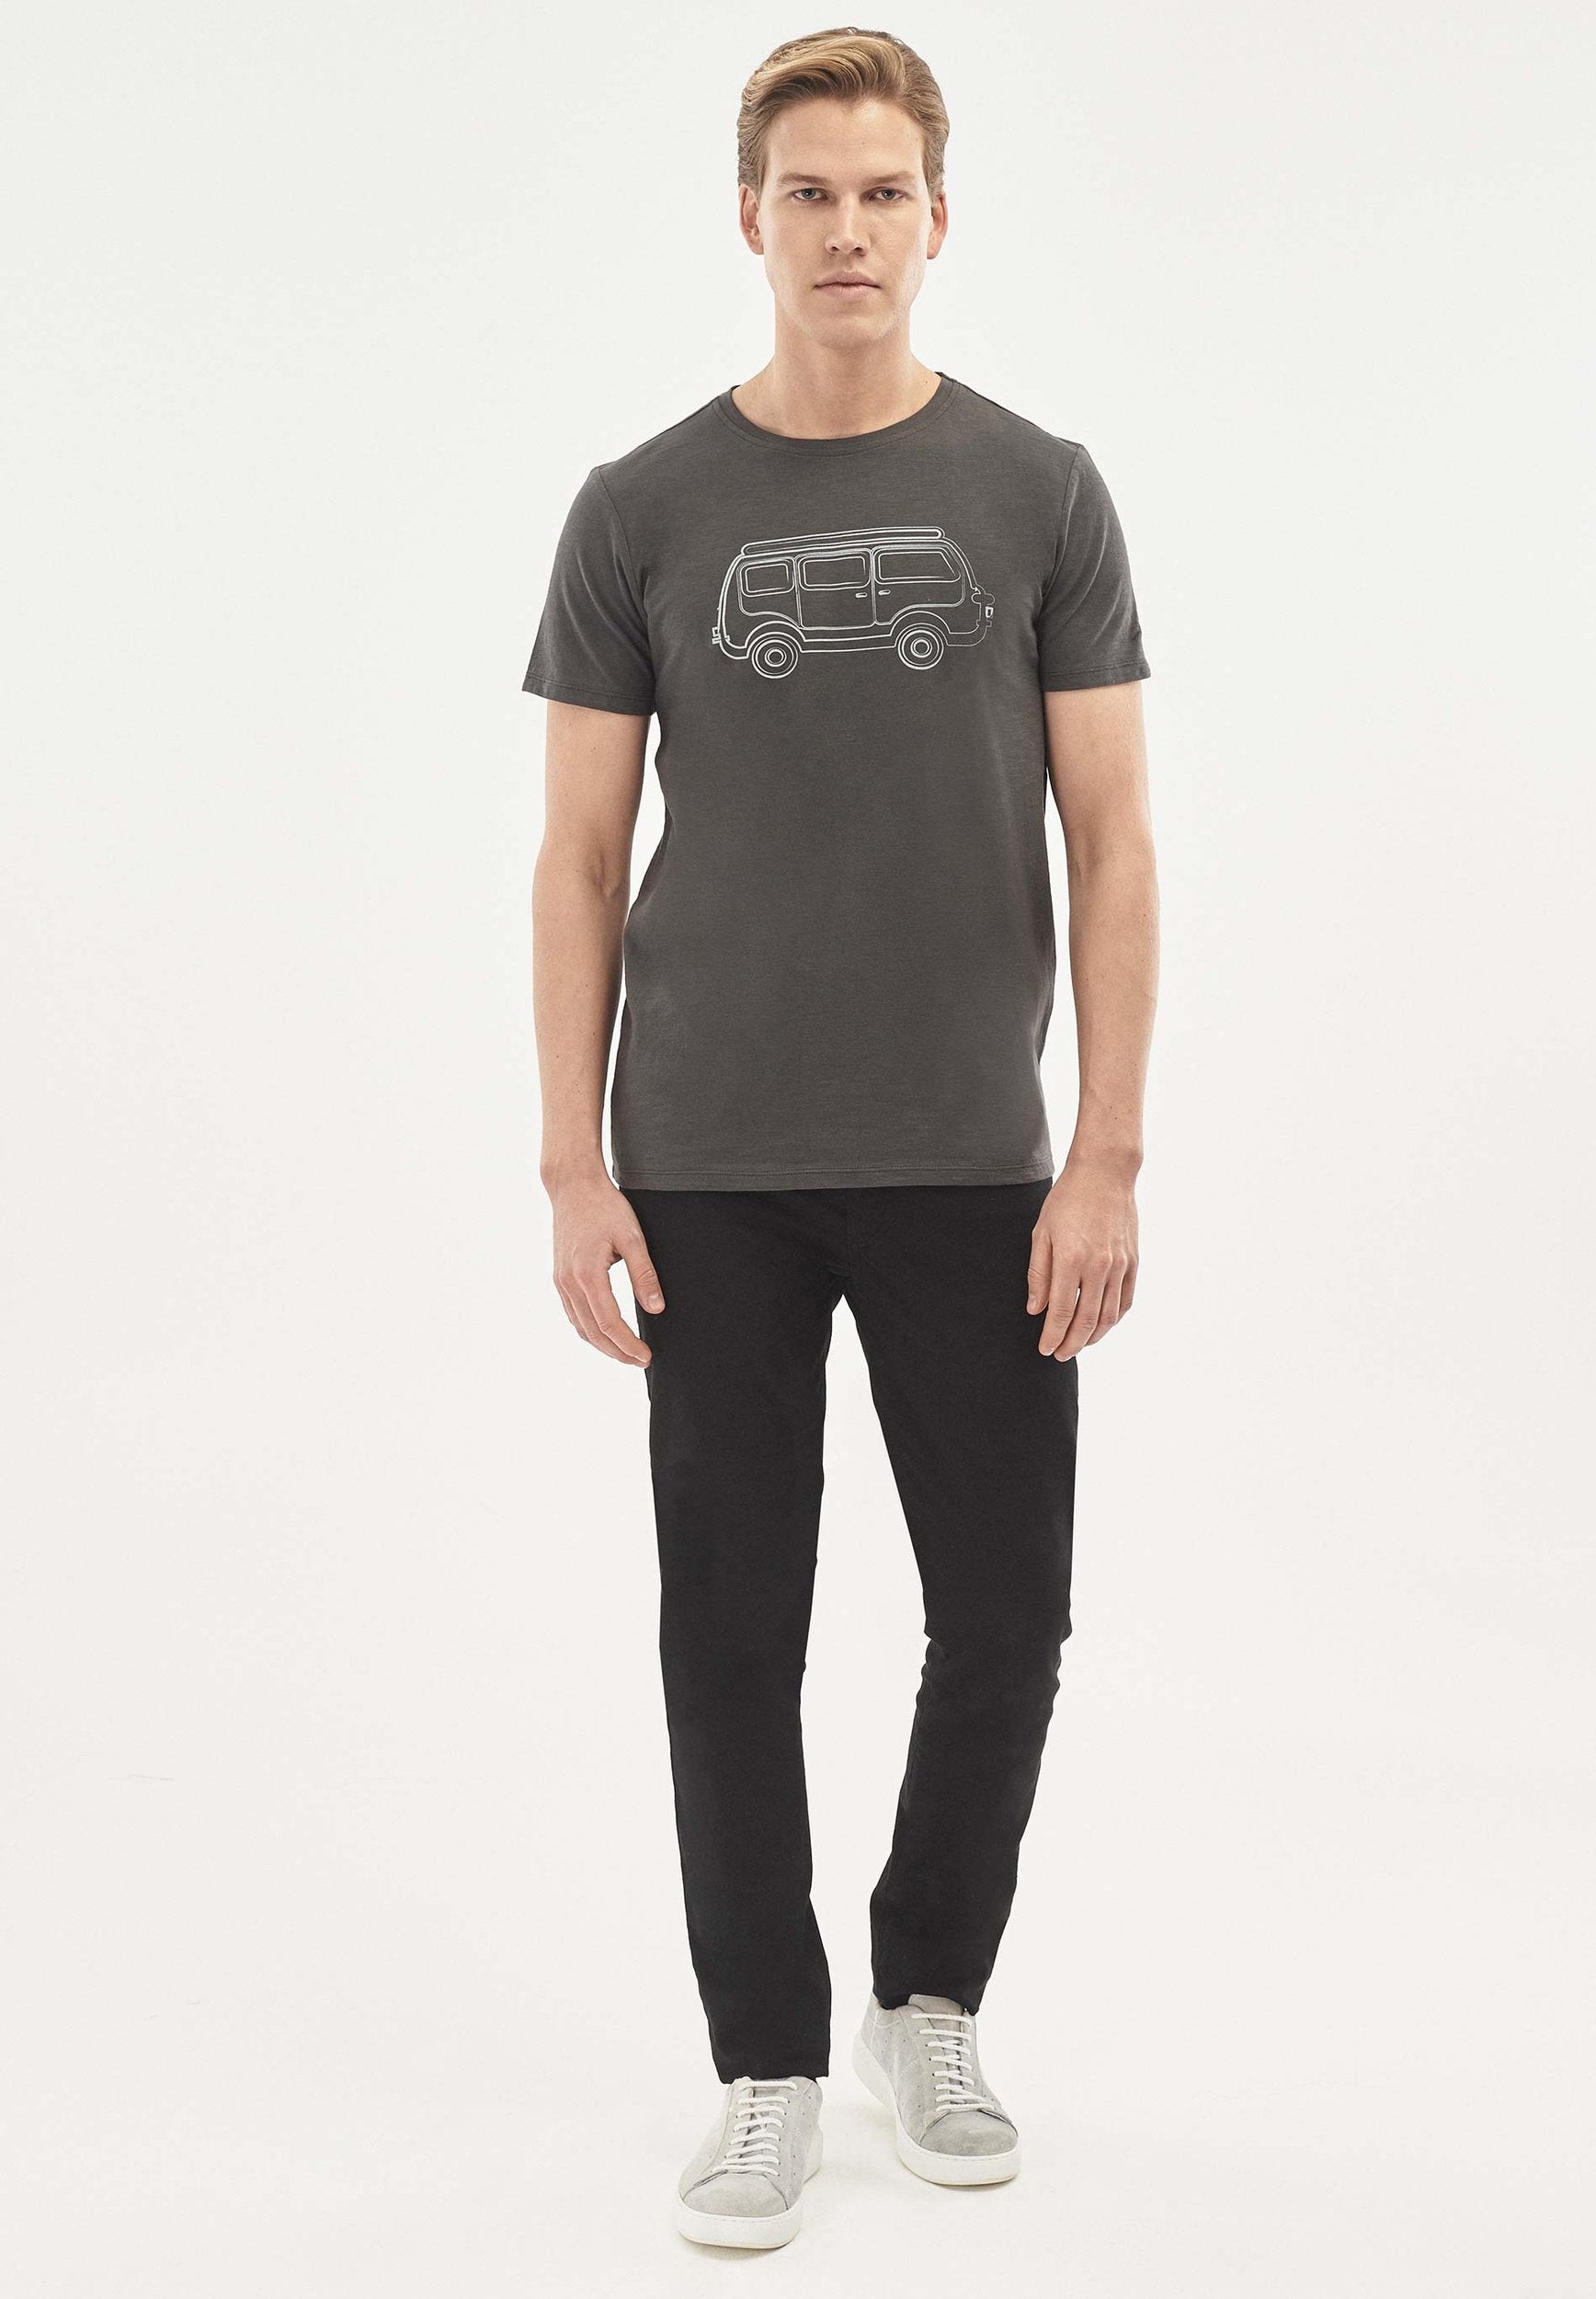 T-Shirt aus Bio-Baumwolle mit Camper-Van-Print